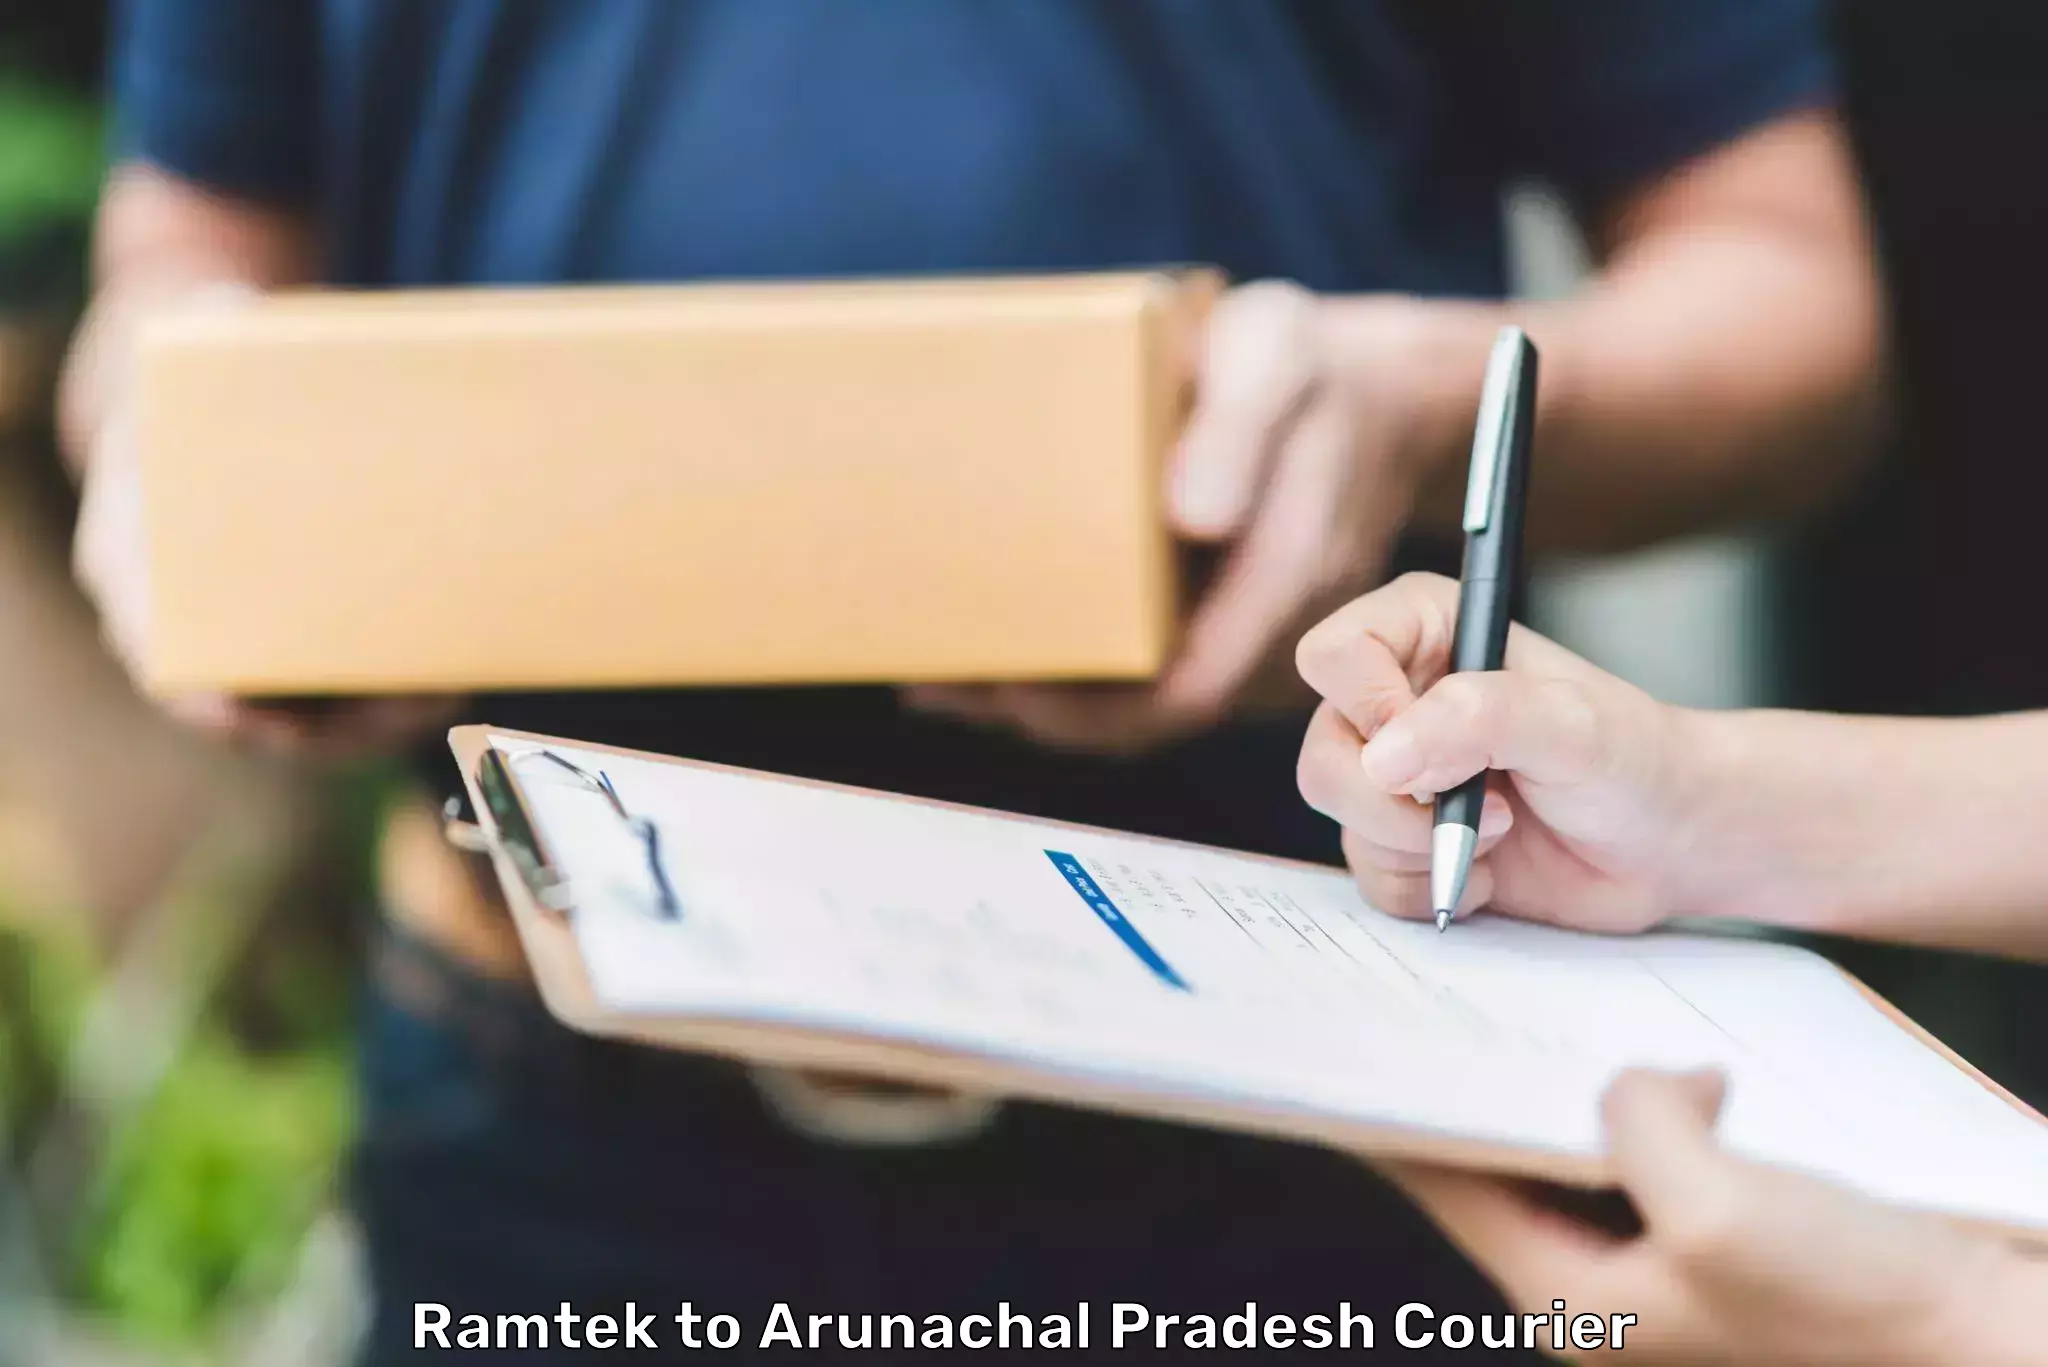 Easy return solutions in Ramtek to Arunachal Pradesh